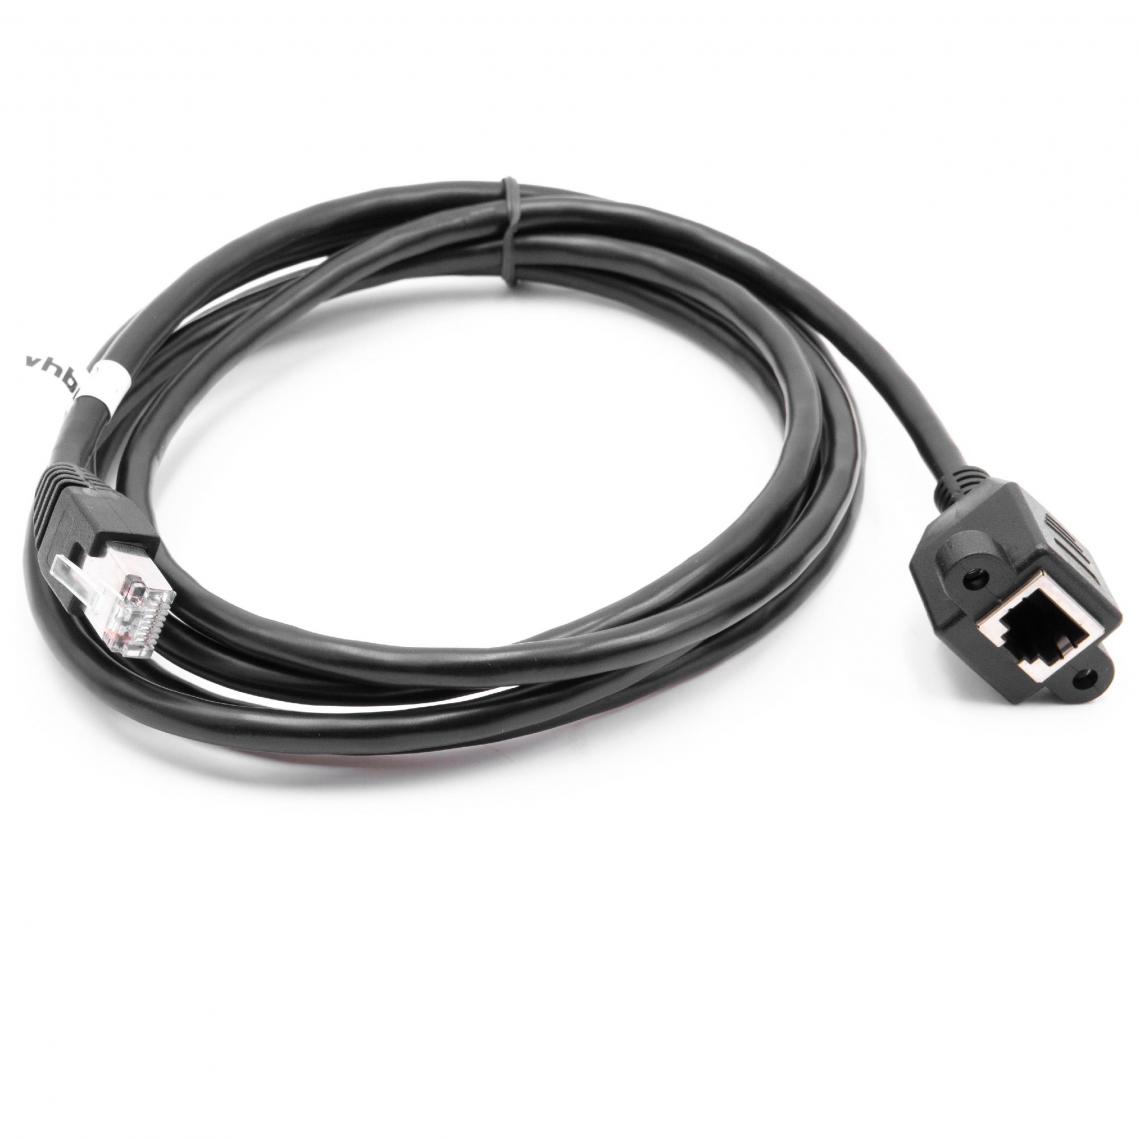 Vhbw - vhbw Câble d'extension LAN Ethernet Cat6 Extension RJ45 Plug to Socket RJ45 2m avec bride de montage noir - Accessoires alimentation